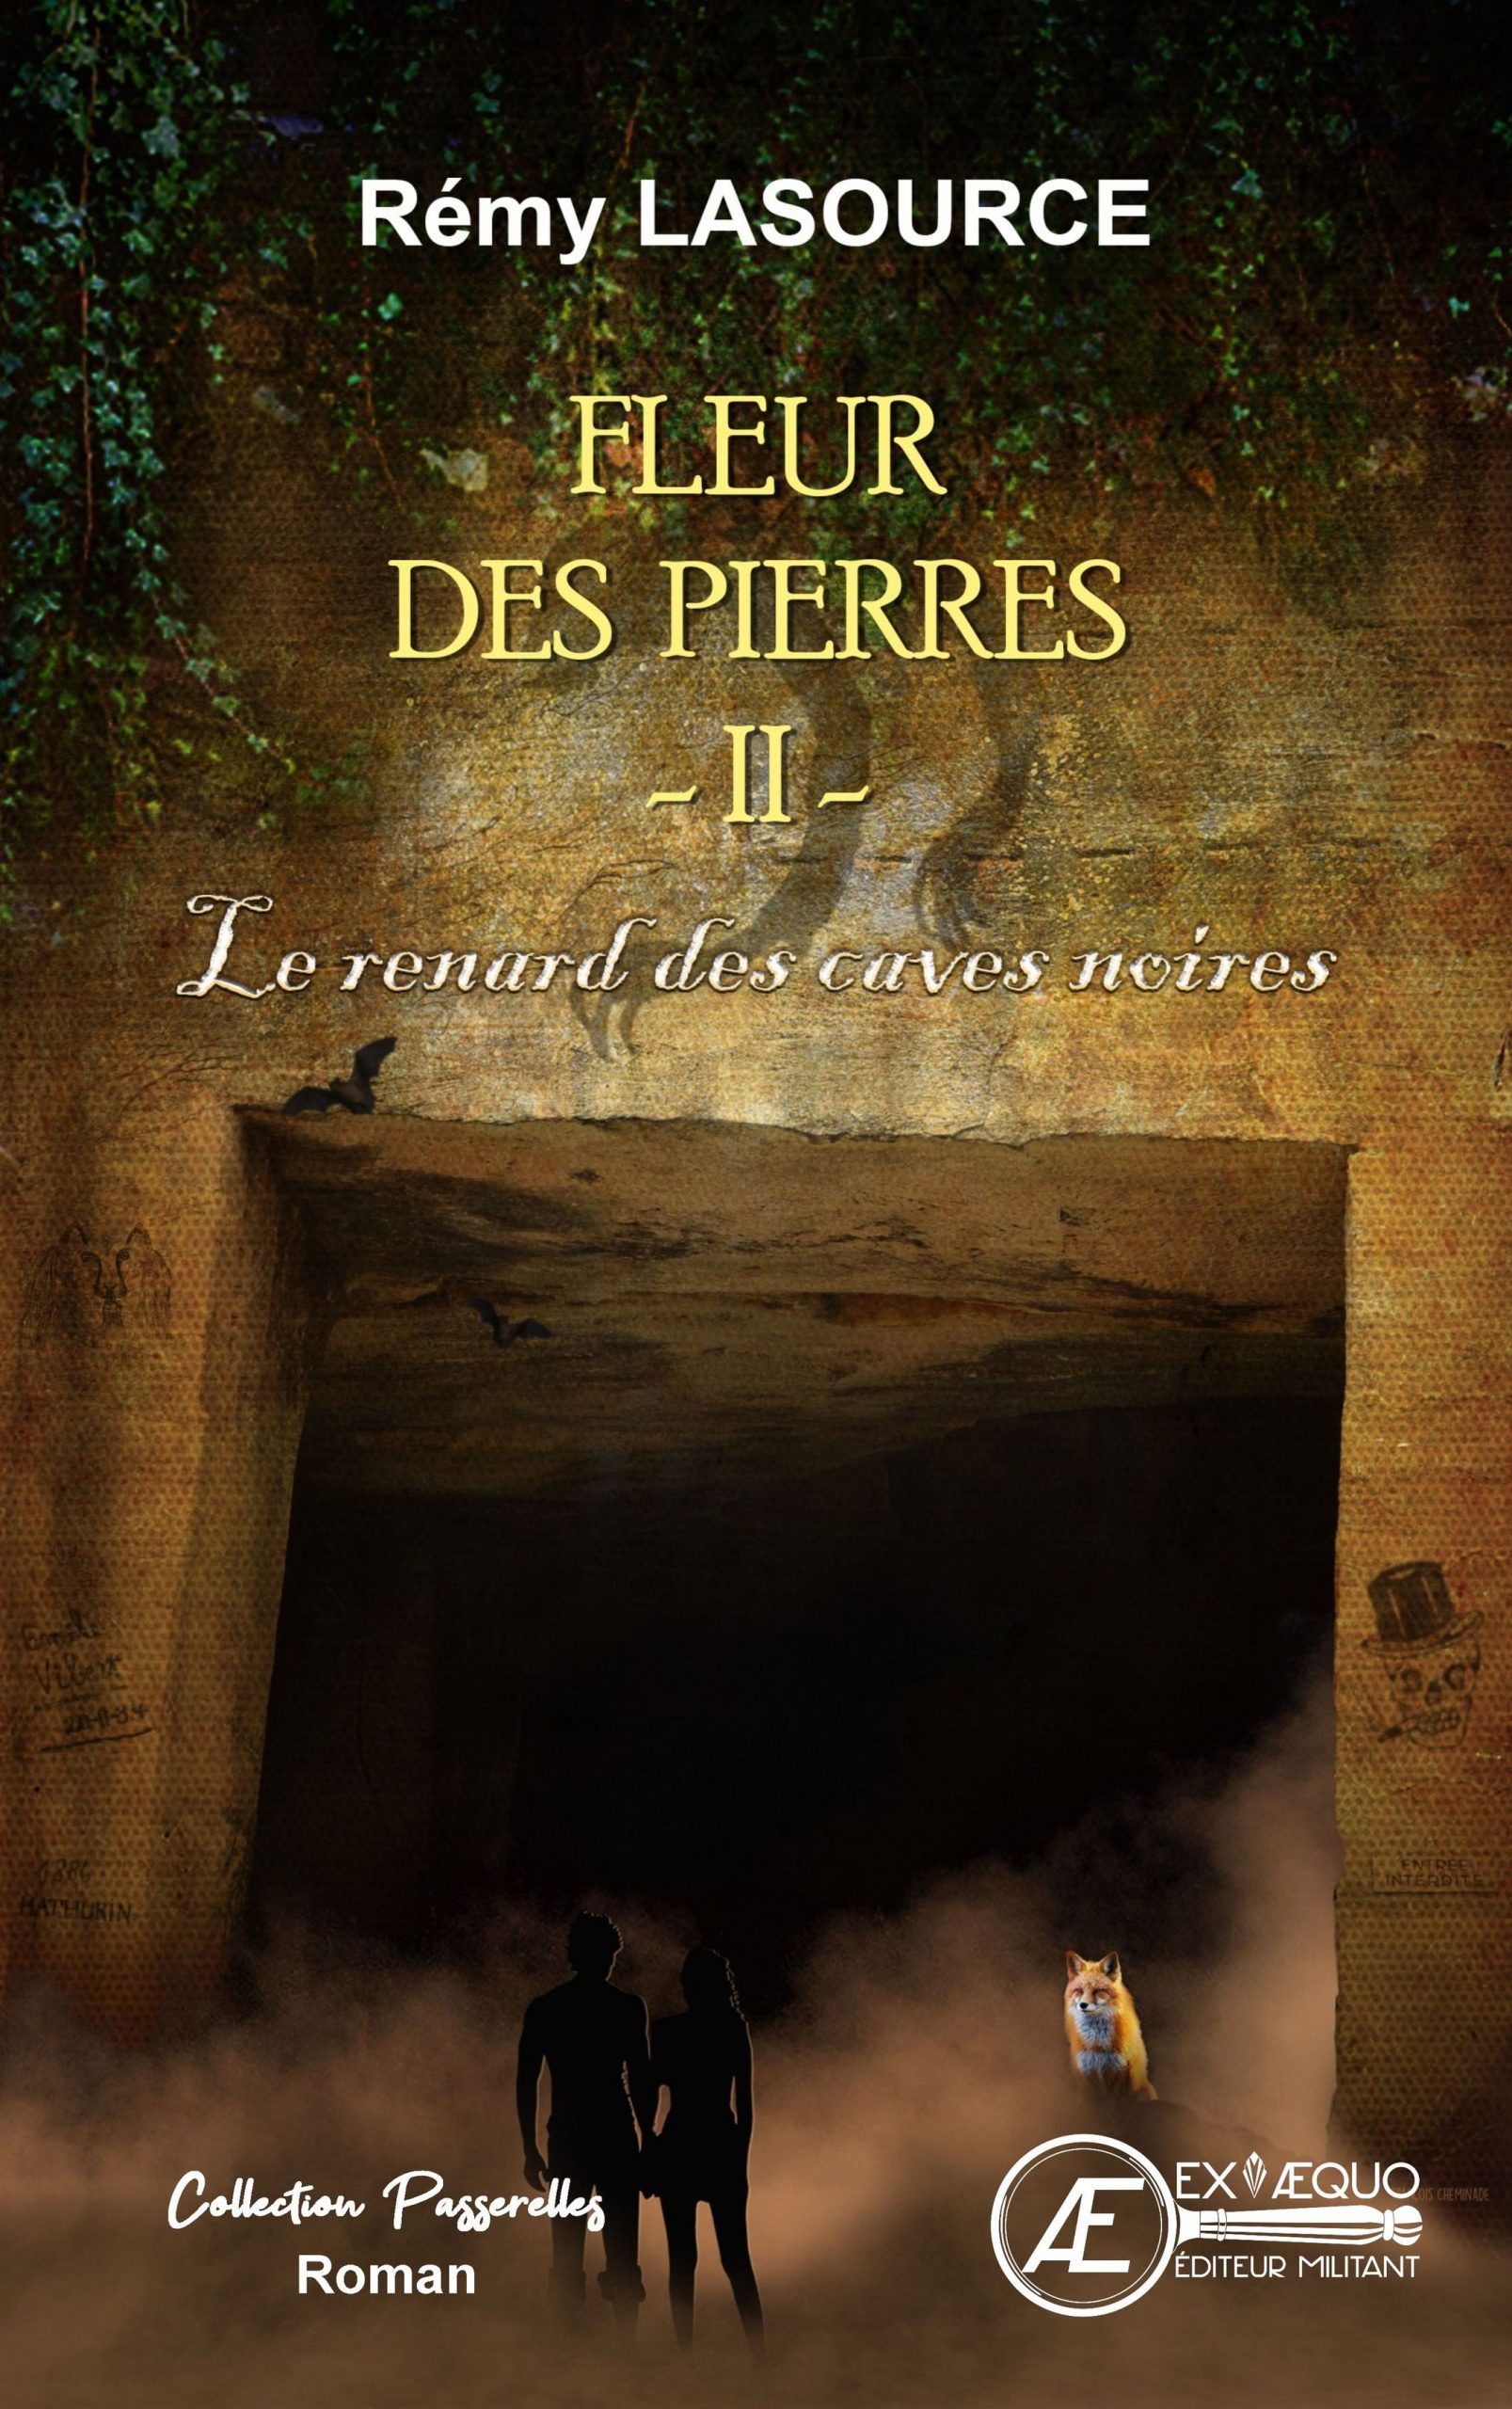 You are currently viewing Le renard des caves noires, de Rémy Lasource